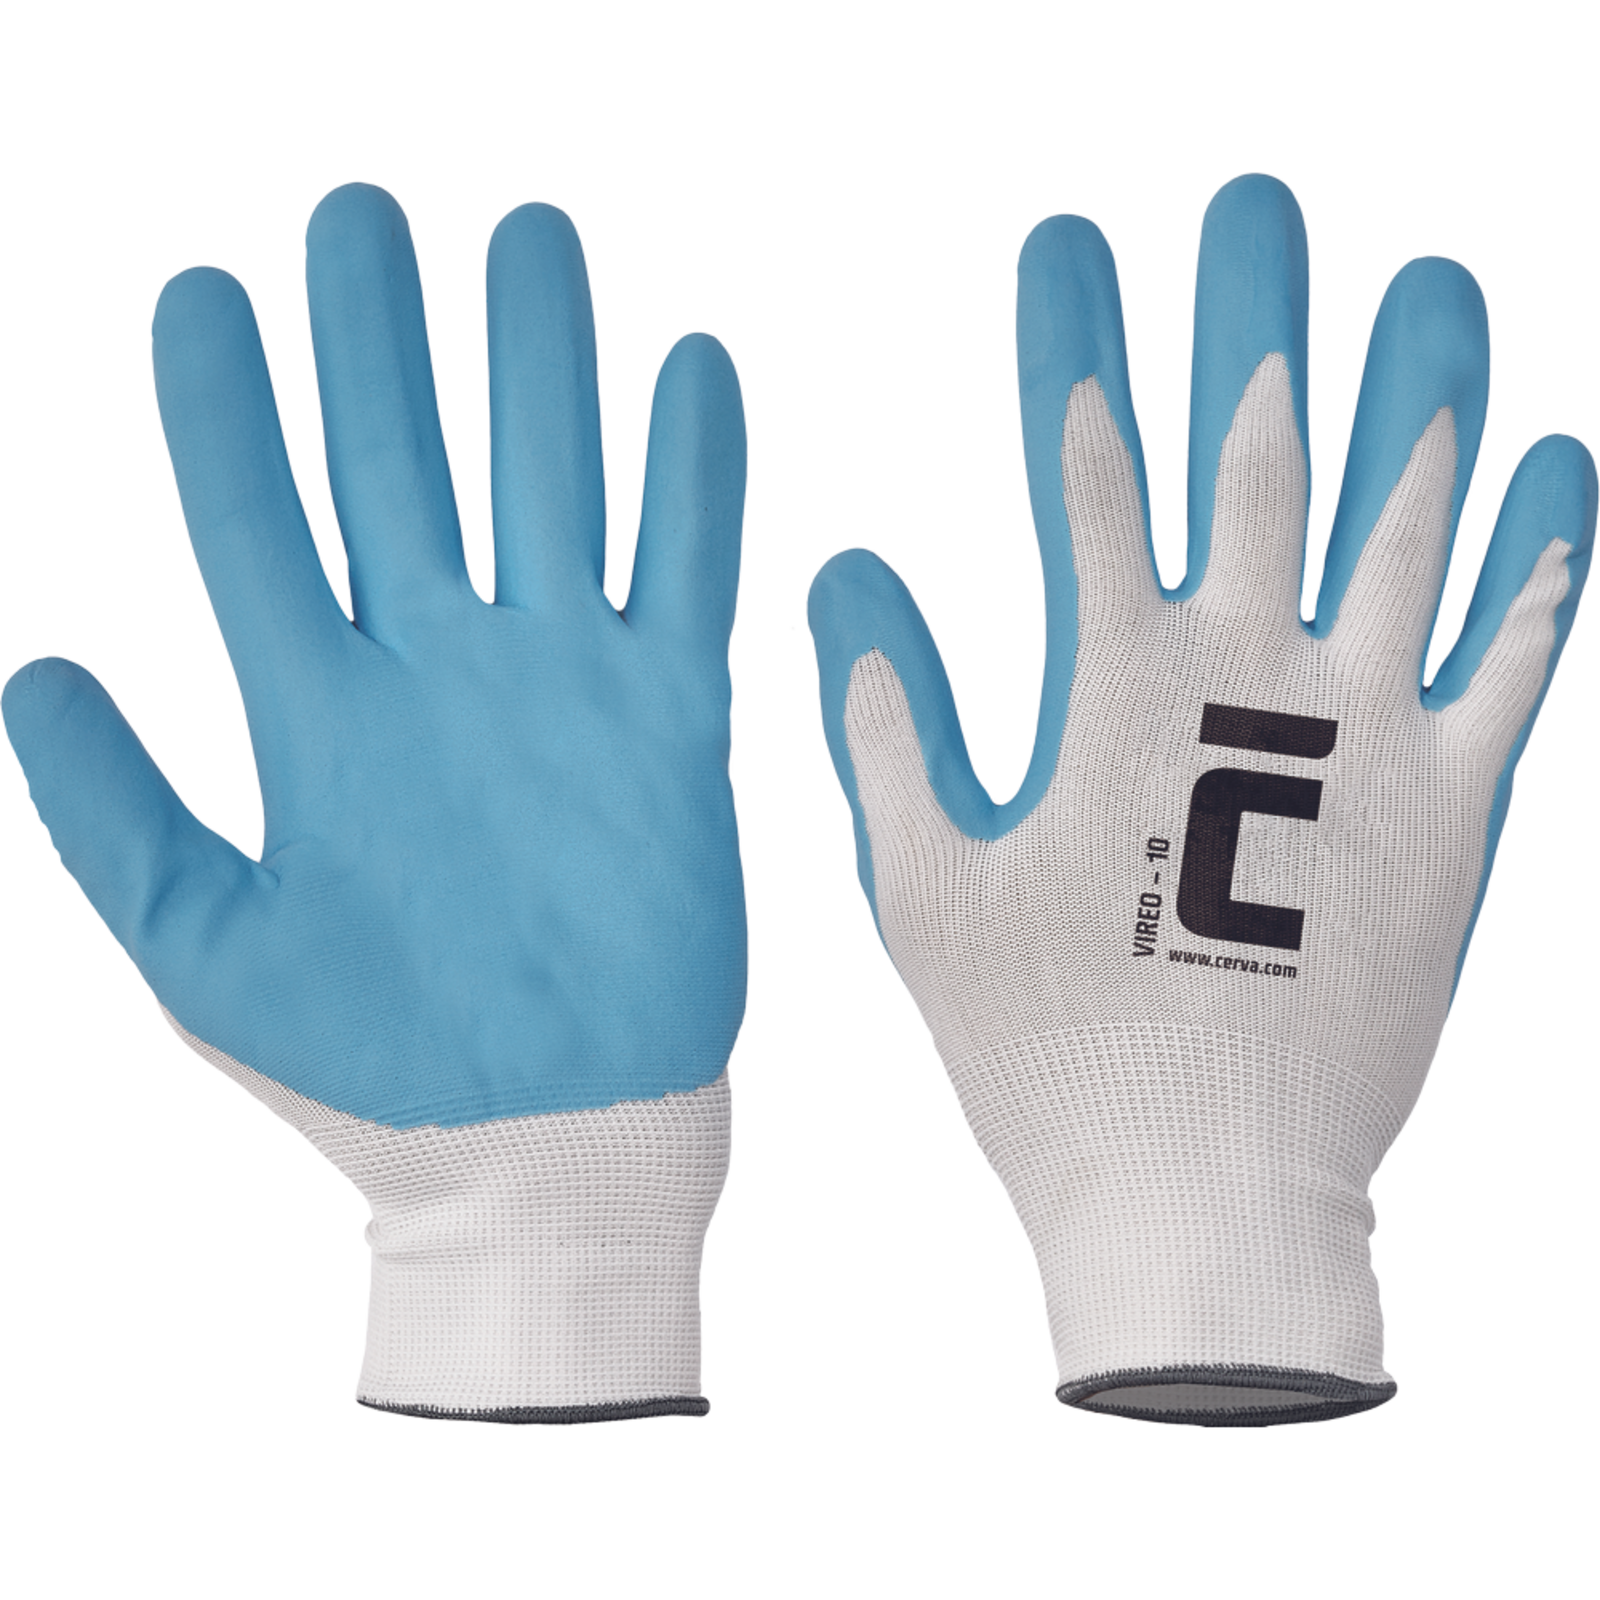 Pracovné rukavice Cerva Vireo, mechanické - univerzálne, máčané nitril - veľkosť: 7/S, farba: biela/modrá